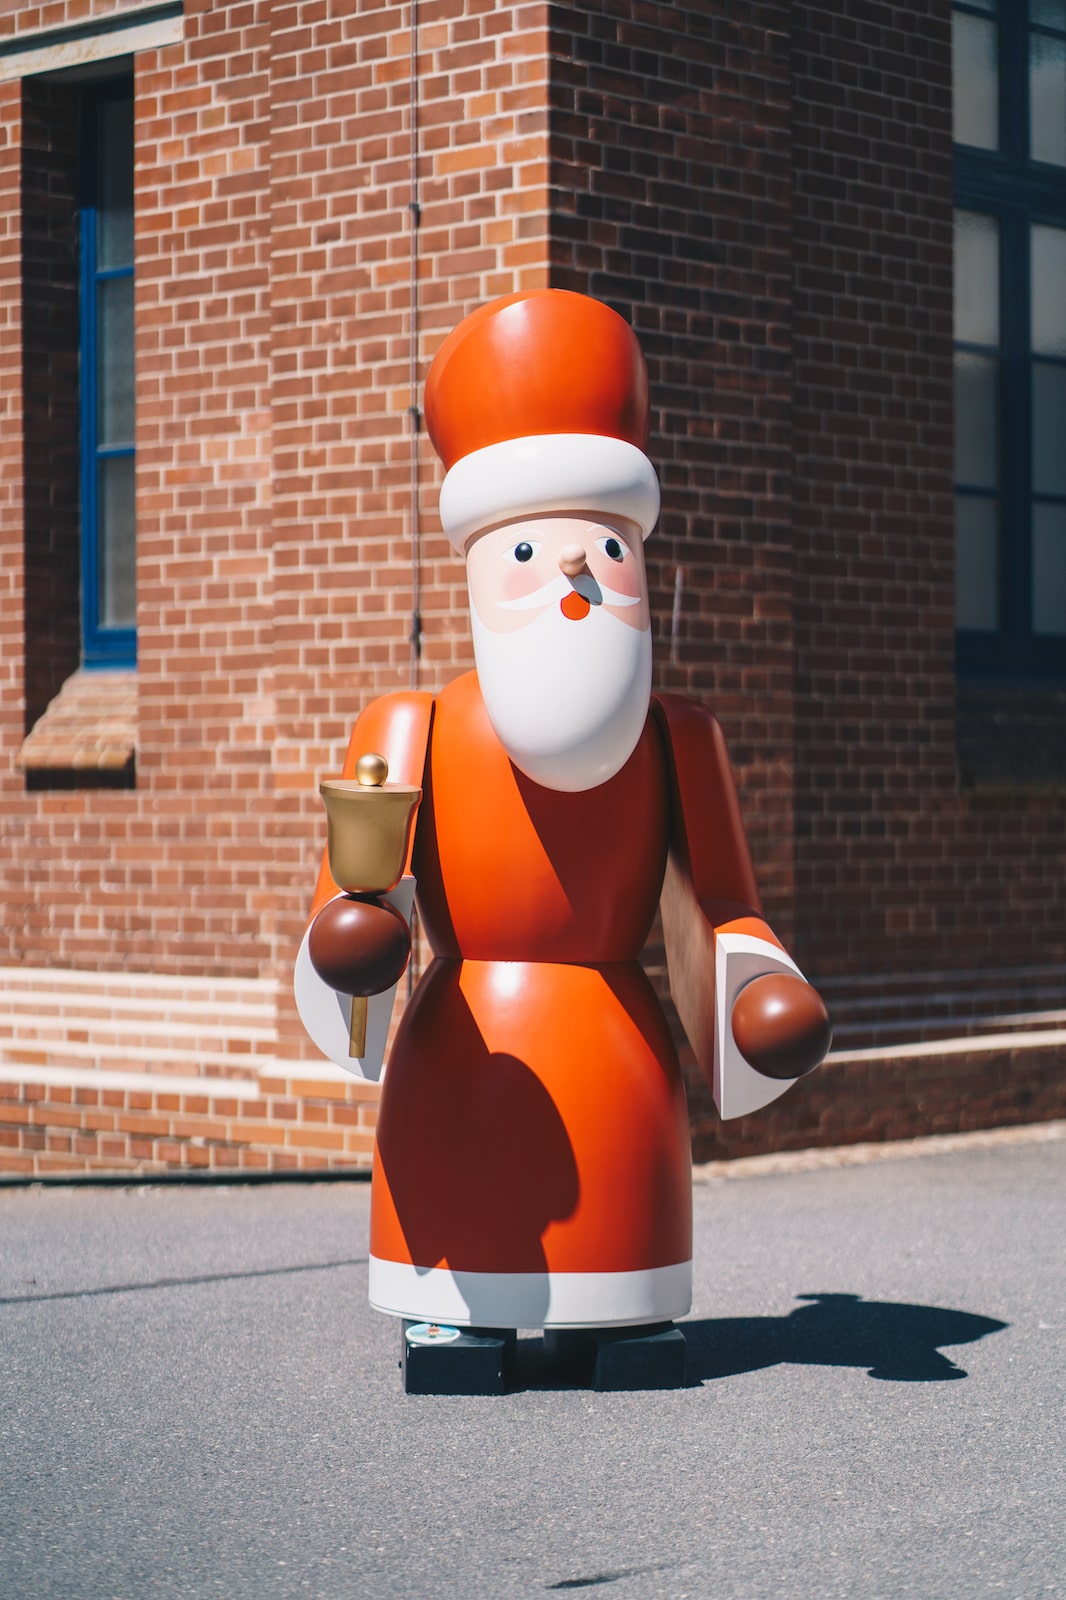 Im Bild ist eine etwa 2 Meter hoher Weihnachtsmann aus Holz zu sehen. Es handelt sich um Erzgebirgische Volkskunst.